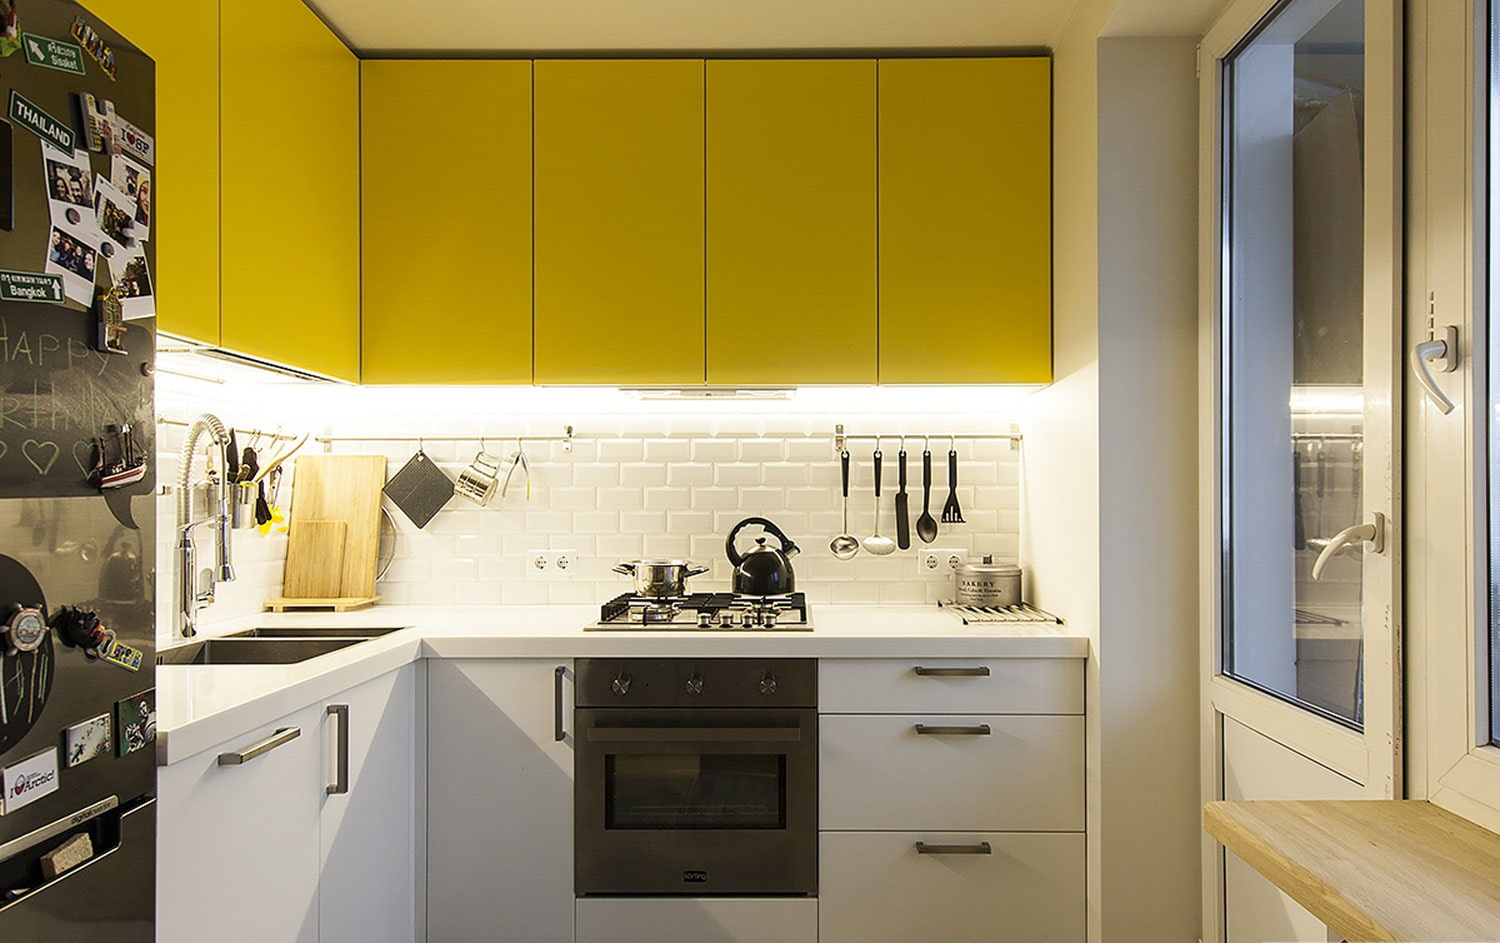 Дизайн маленькой кухни 6 кв метров: планировка с холодильником, газовой .